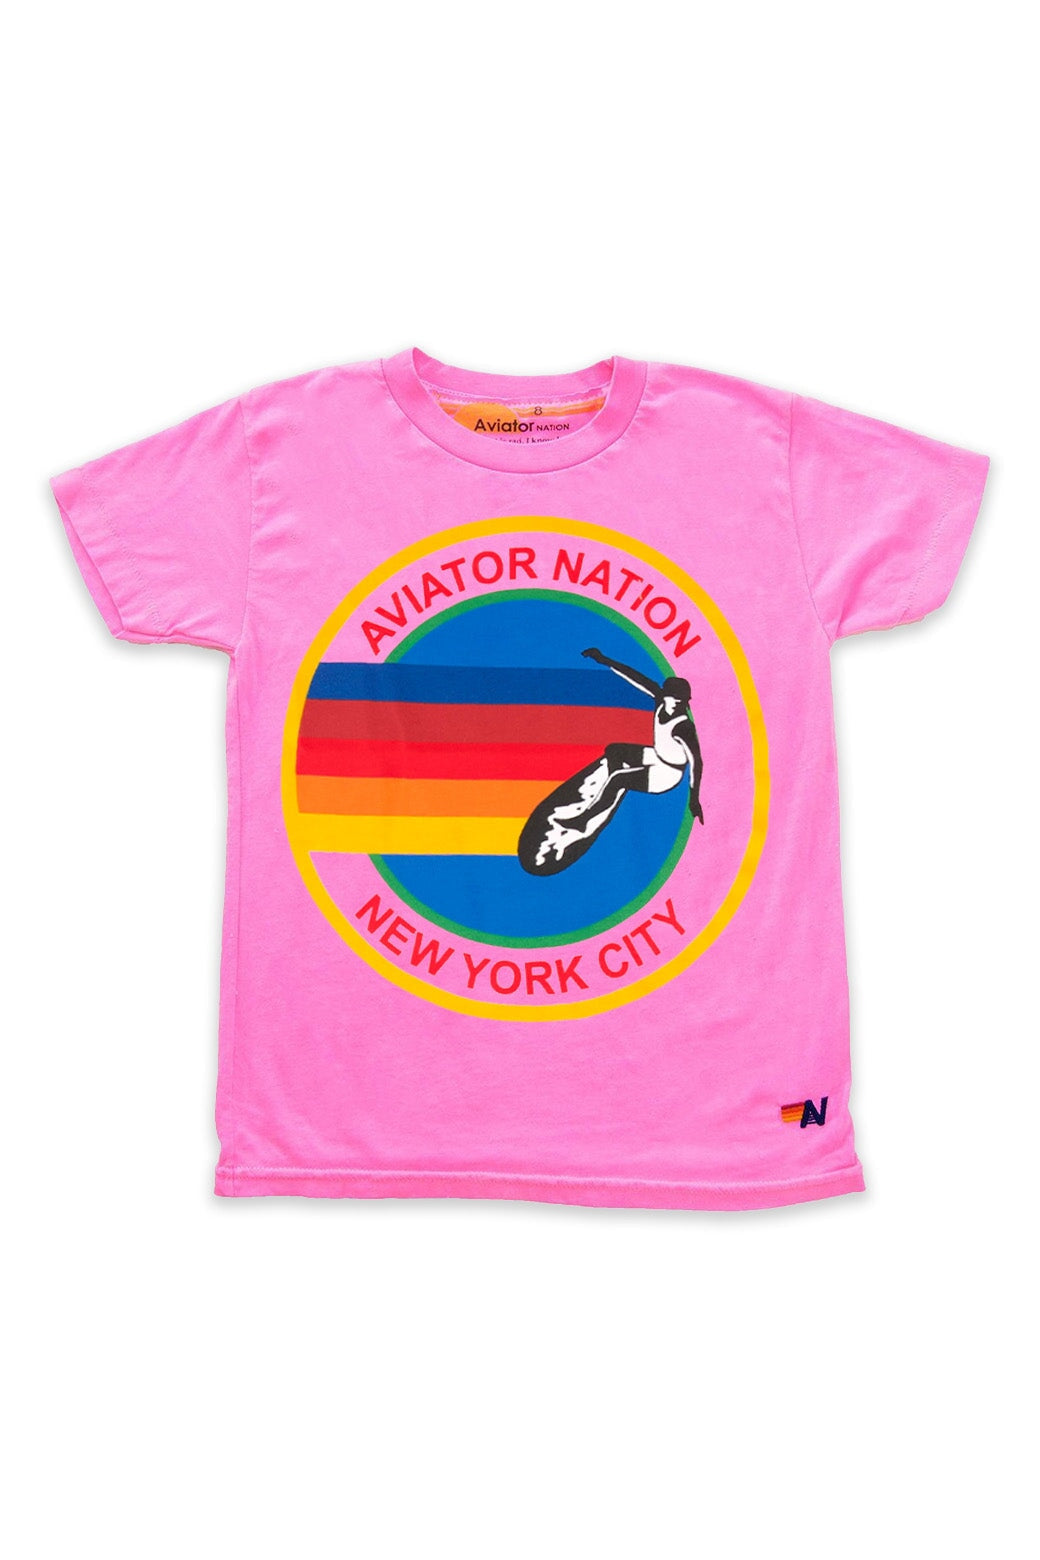 AVIATOR NATION NEW YORK CITY KIDS TEE - NEON PINK Kid's Tee Aviator Nation 